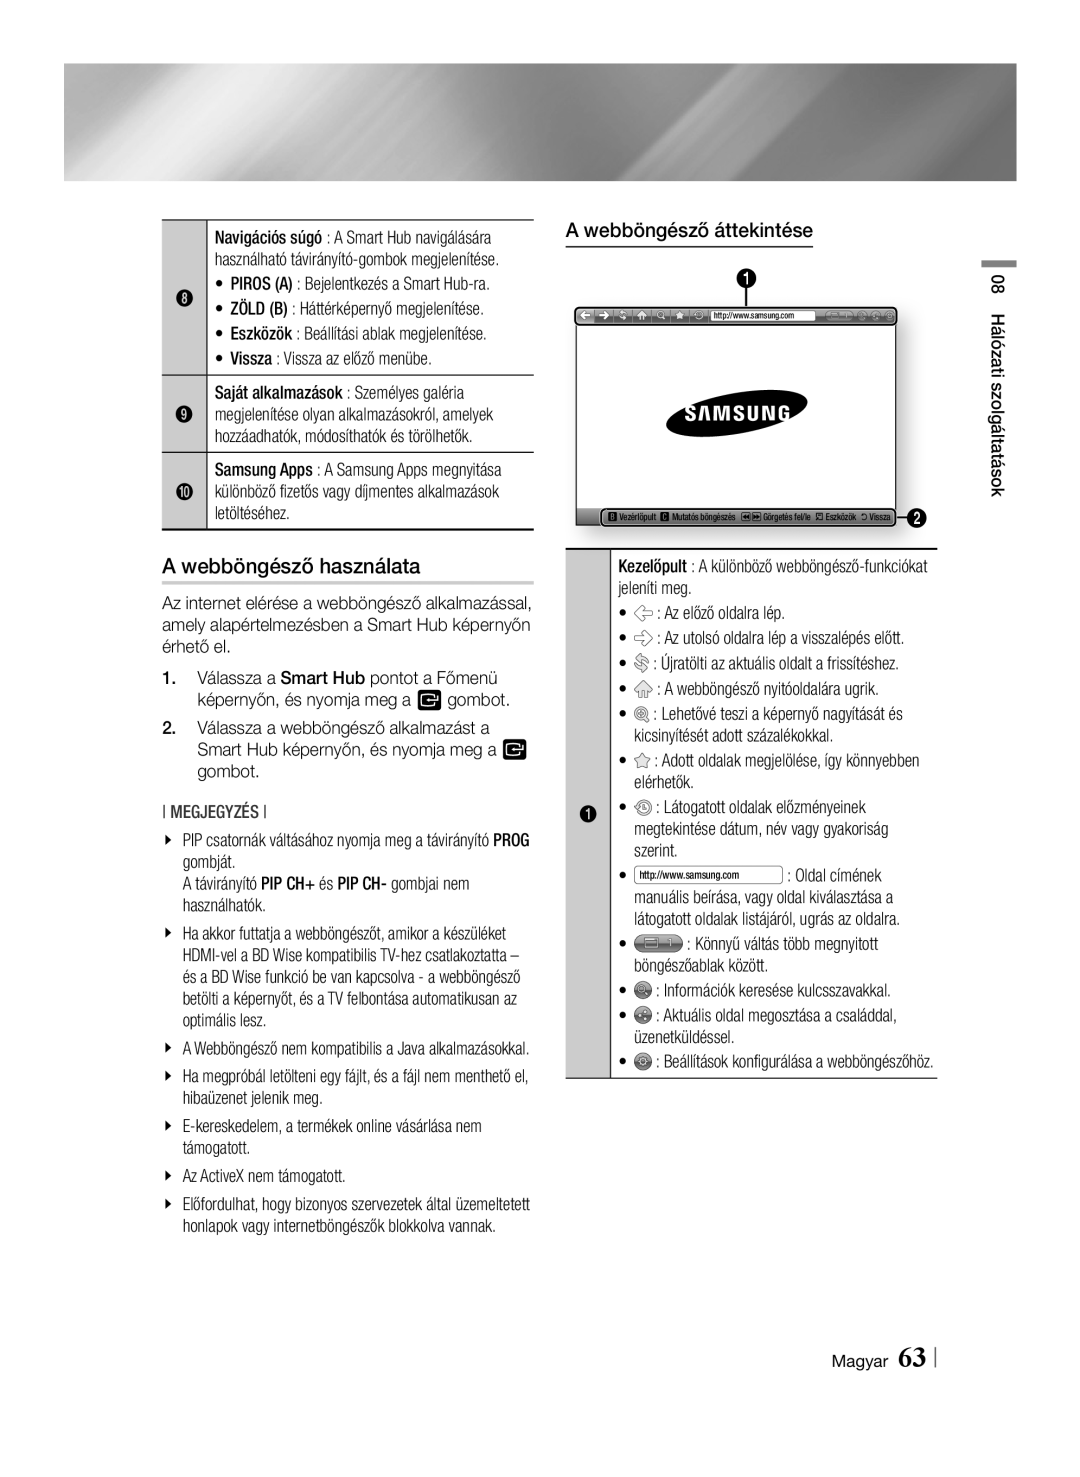 Samsung BD-E8900/EN, BD-E8500/EN, BD-E8300/EN manual A webböngésző használata, Megjegyzés 